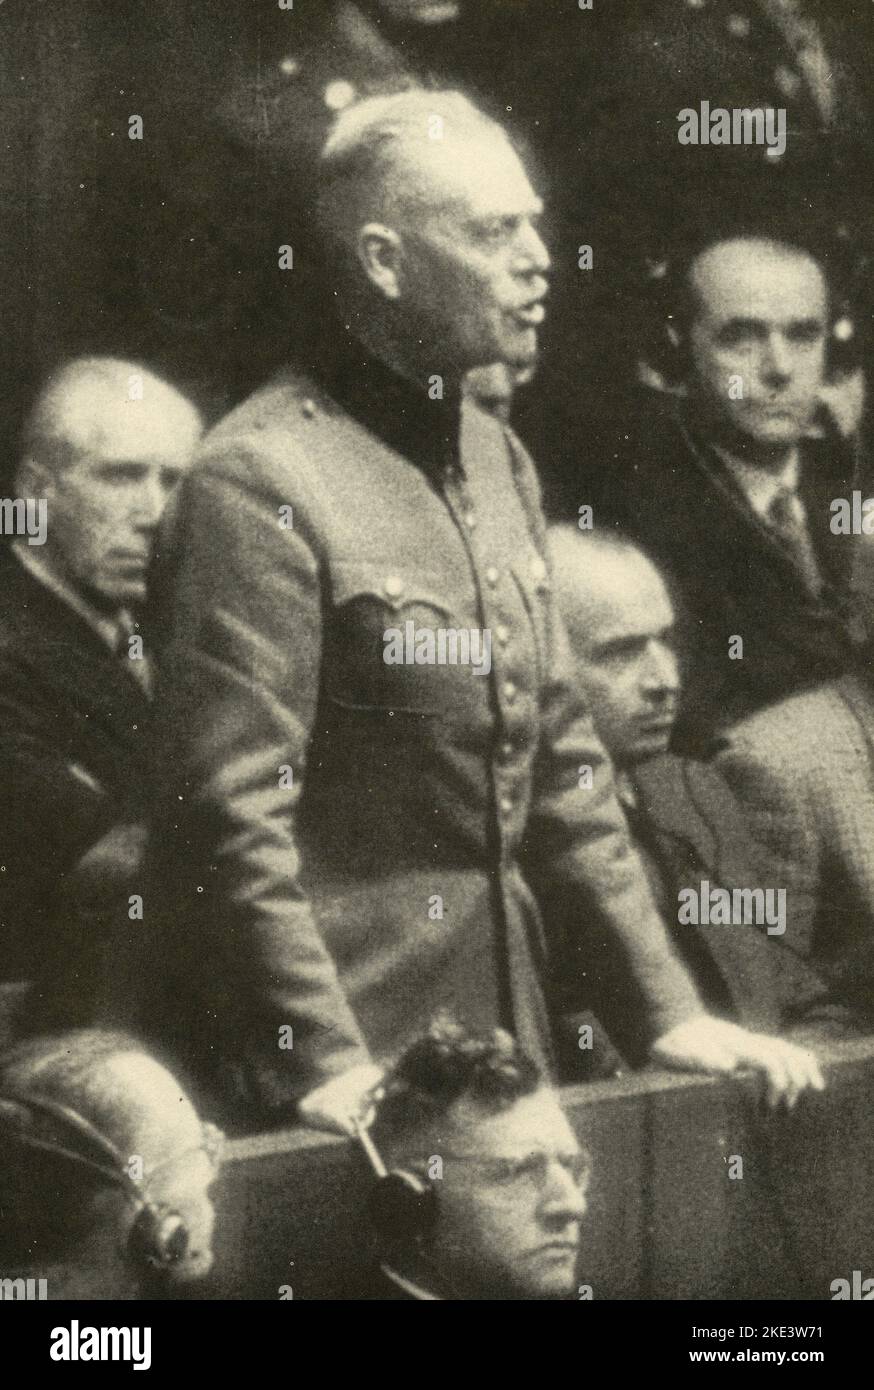 Generale tedesco, Field marshall e criminale di guerra Wilhelm Keitel durante il processo di Norimberga, Germania 1945 Foto Stock